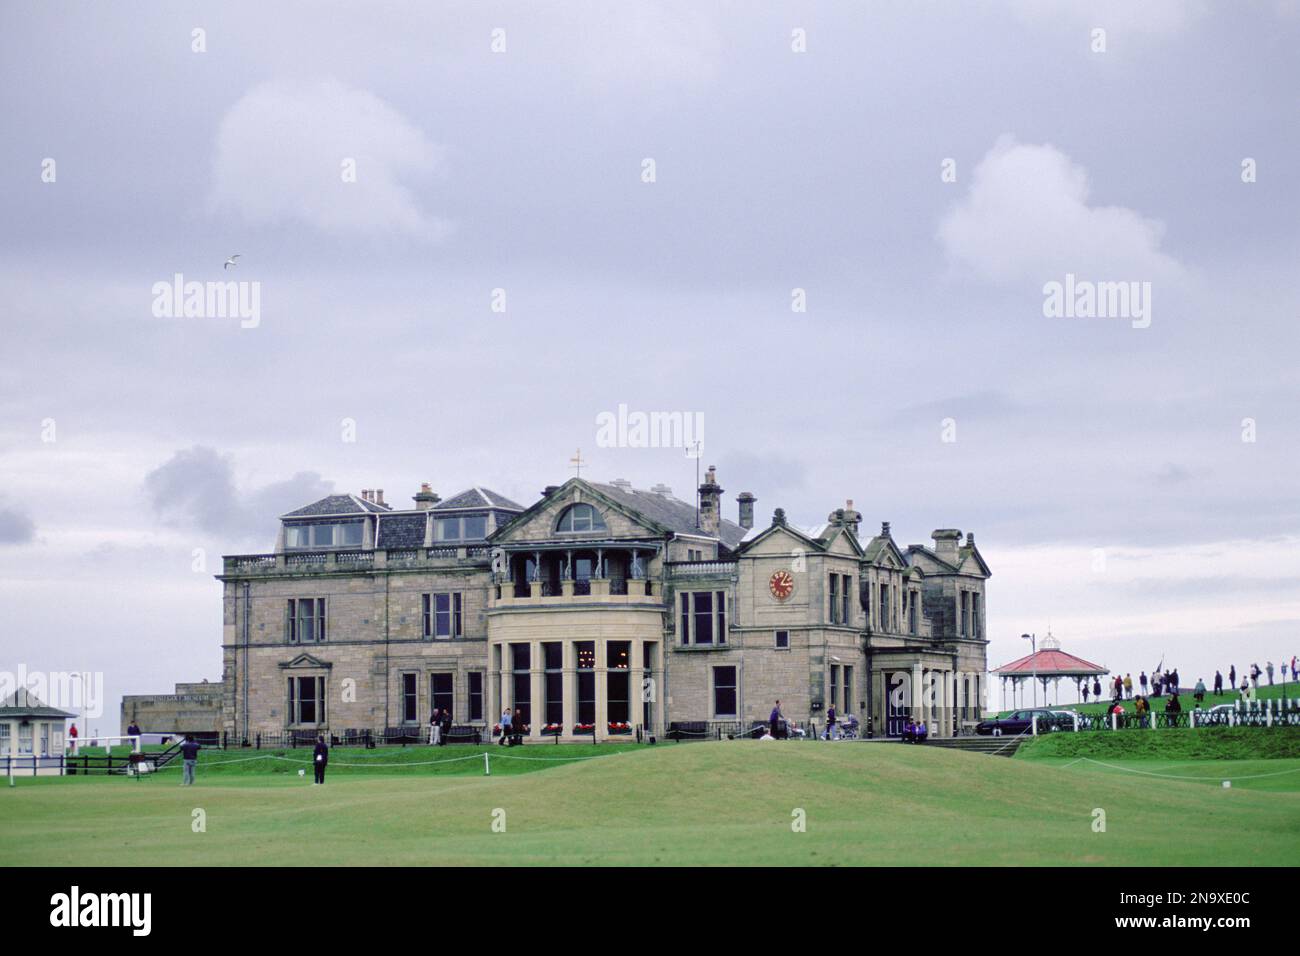 St. Parcours de golf Andrews en Écosse, 'The Home of Golf' ; St. Andrews, Fife, Écosse Banque D'Images